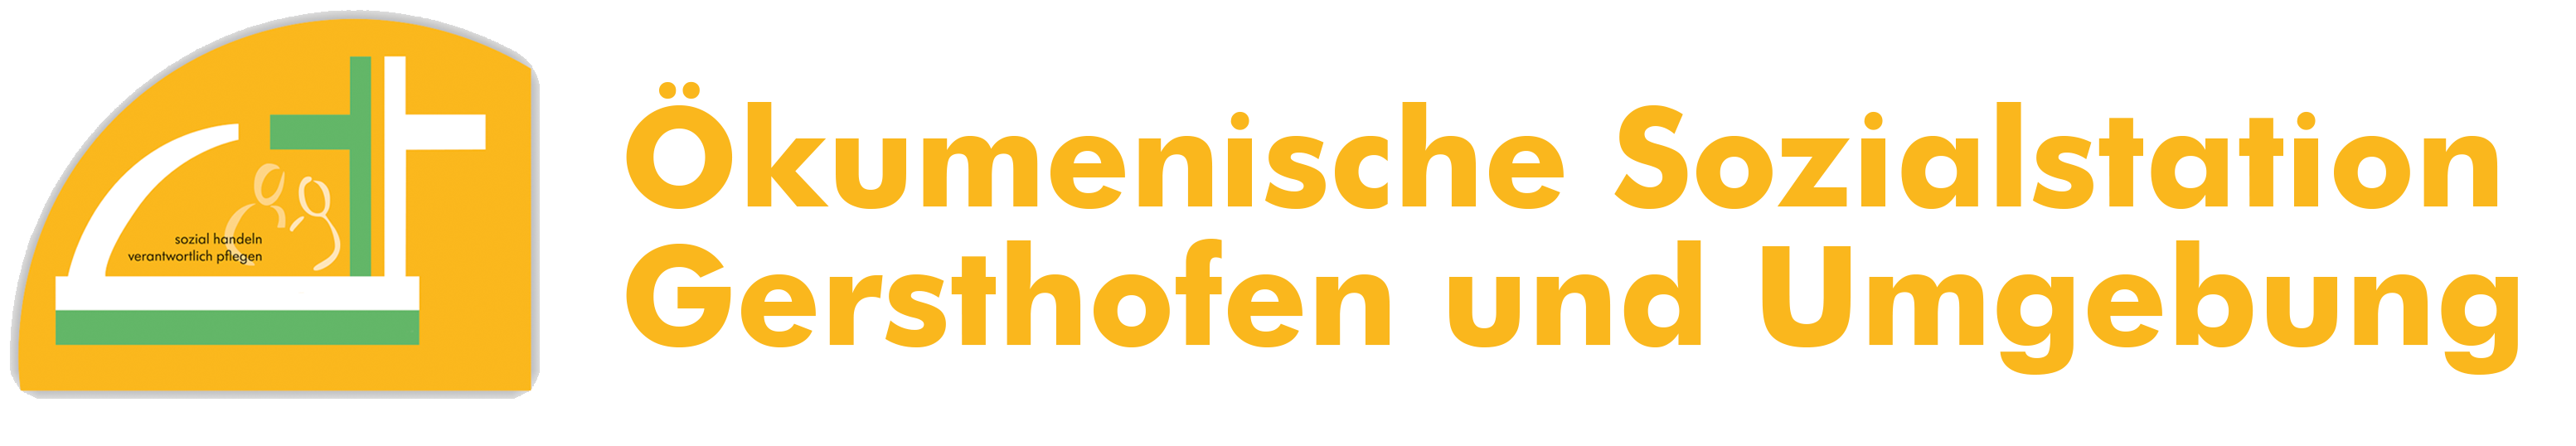 Logo: Ökumenische Sozialstation Gersthofen und Umgebung gGmbH